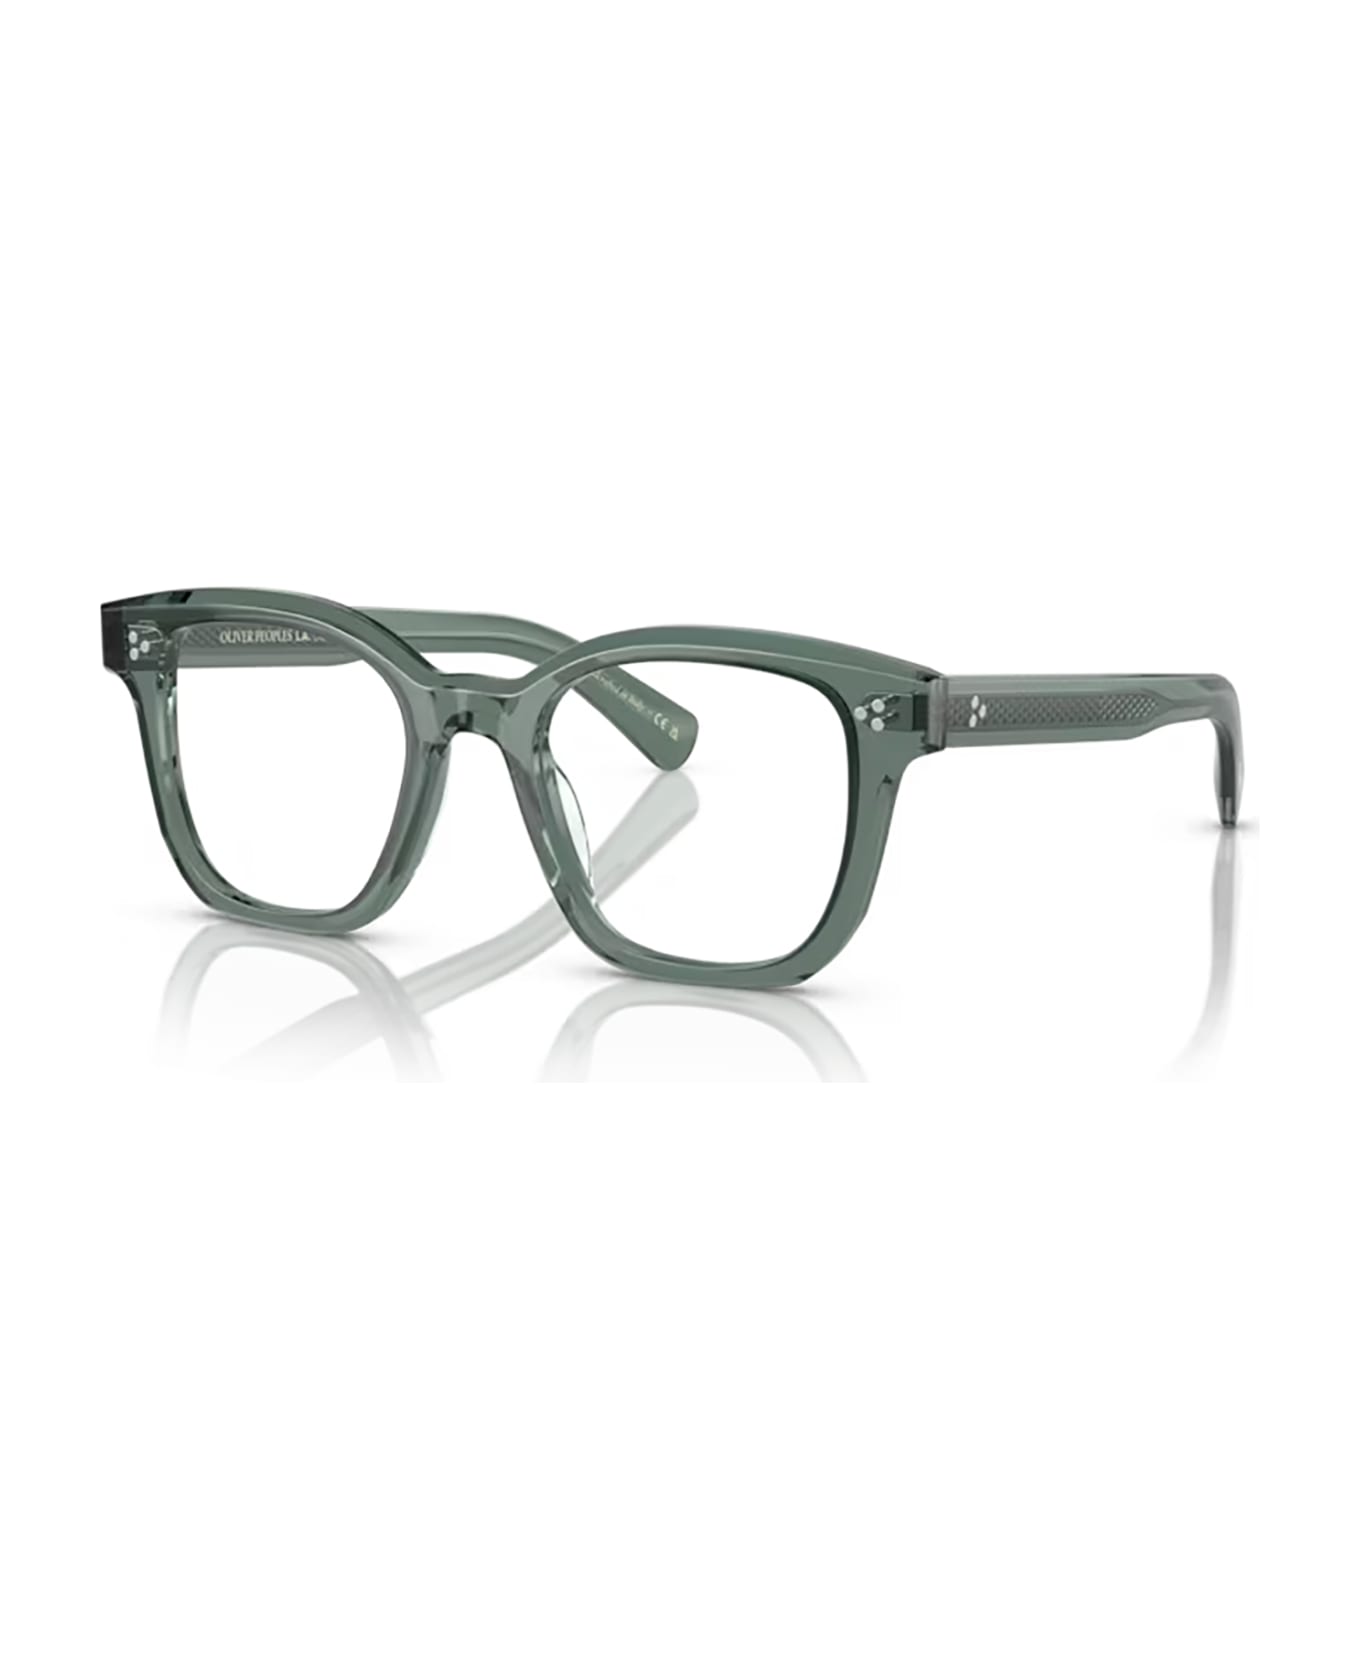 Oliver Peoples Ov5525u Ivy Glasses - Ivy アイウェア